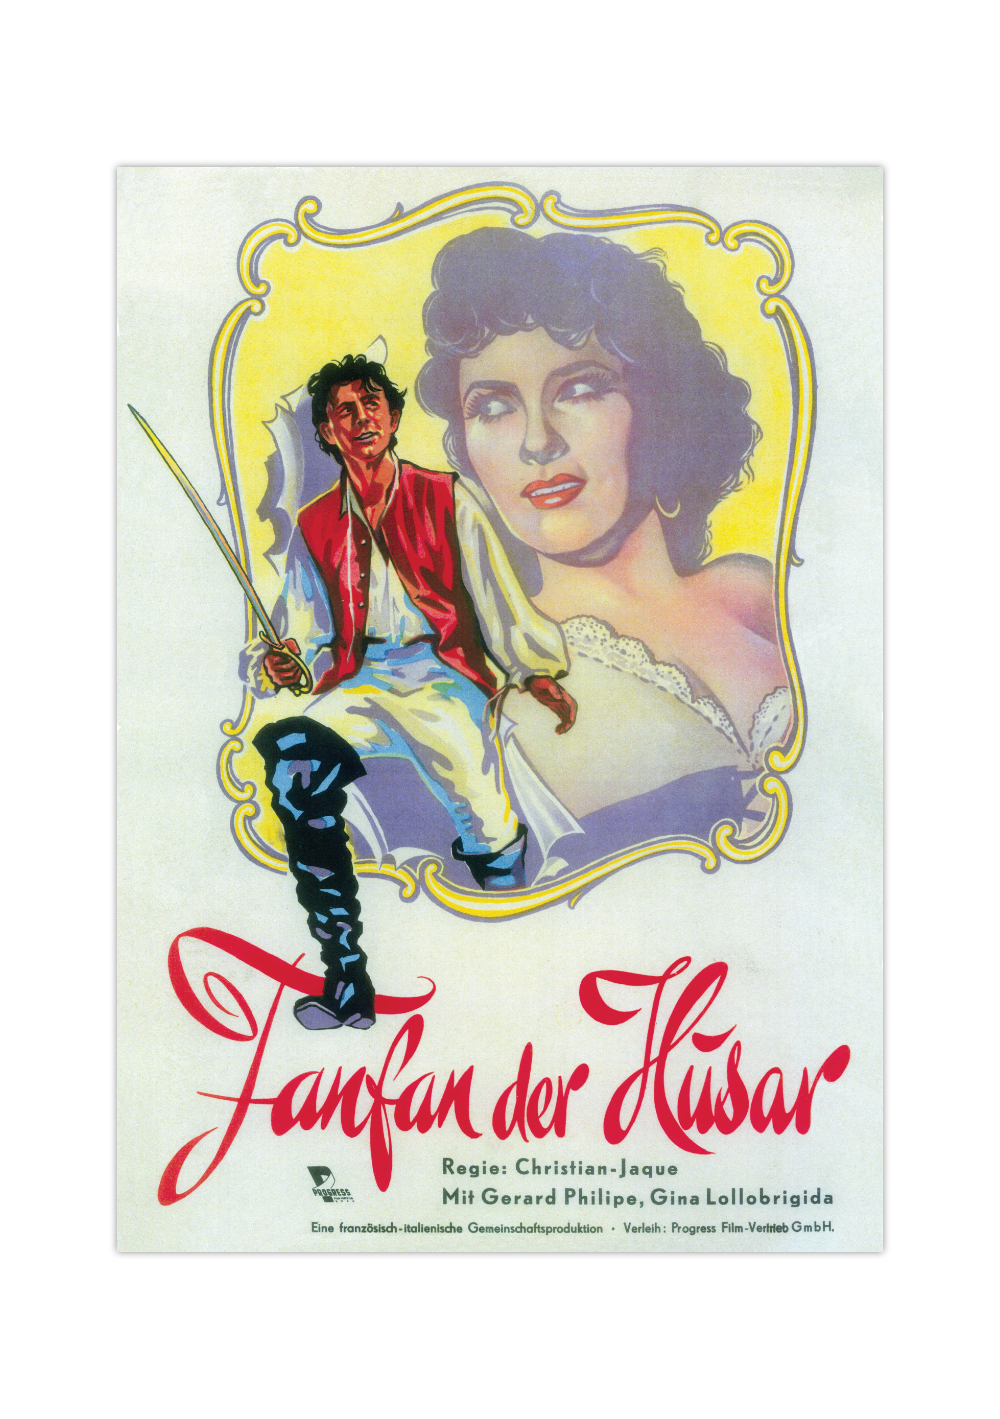 Bei dem Poster handelt es sich um den Nachdruck eines Filmplakates aus DDR zum Film "Fanfan der Husar". 